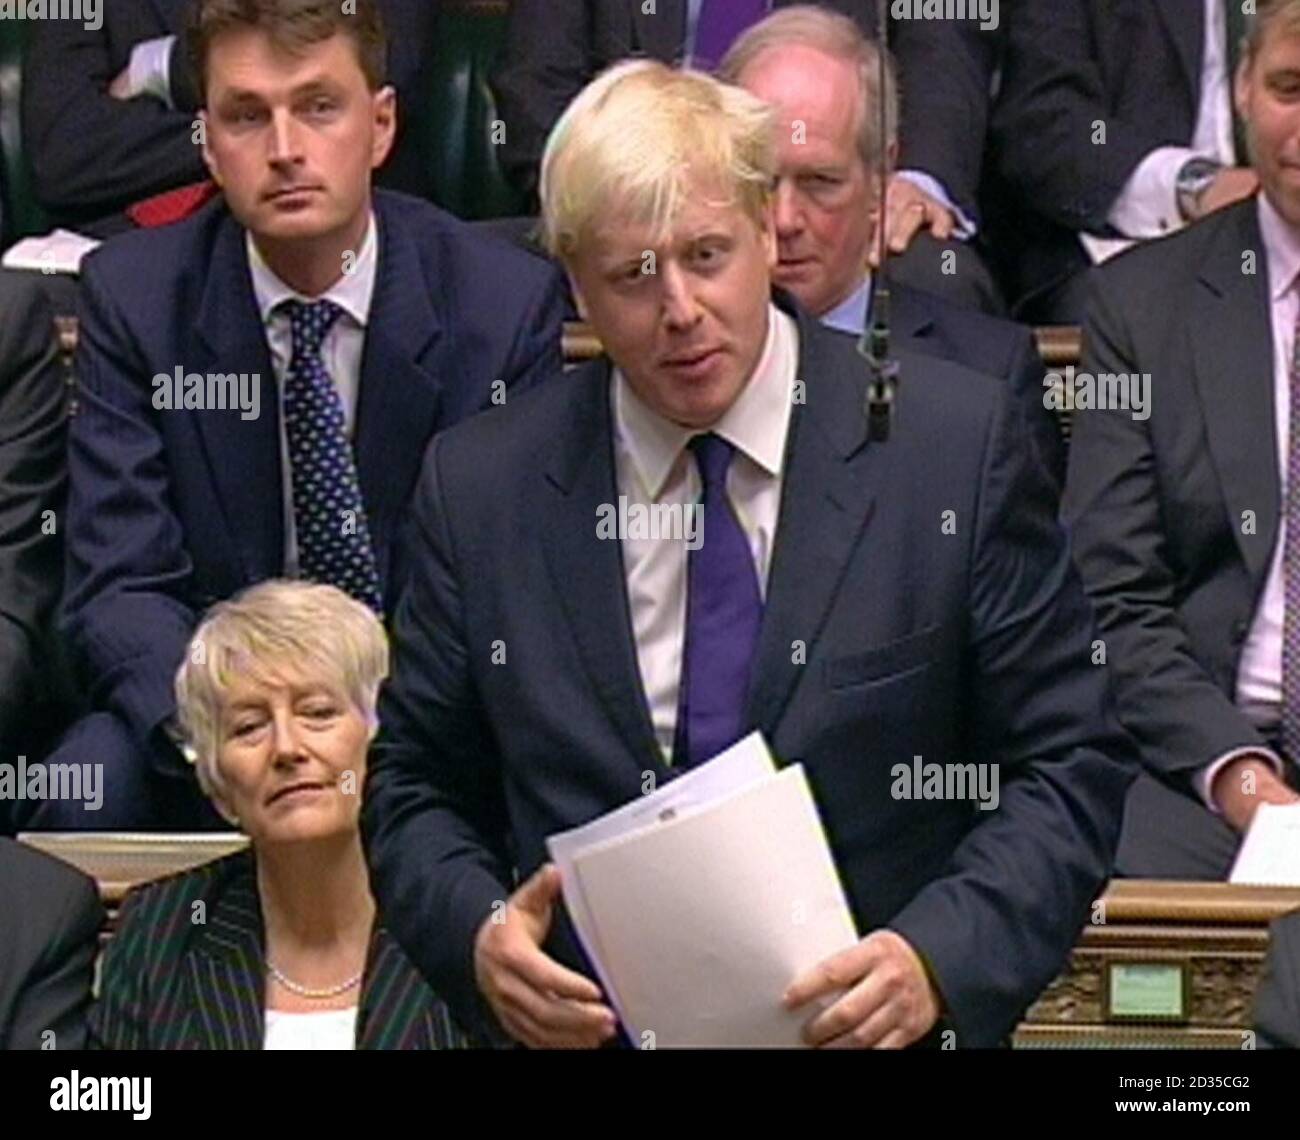 Le maire de New London Boris Johnson pendant les questions des premiers ministres à la Chambre des communes de Londres. Banque D'Images